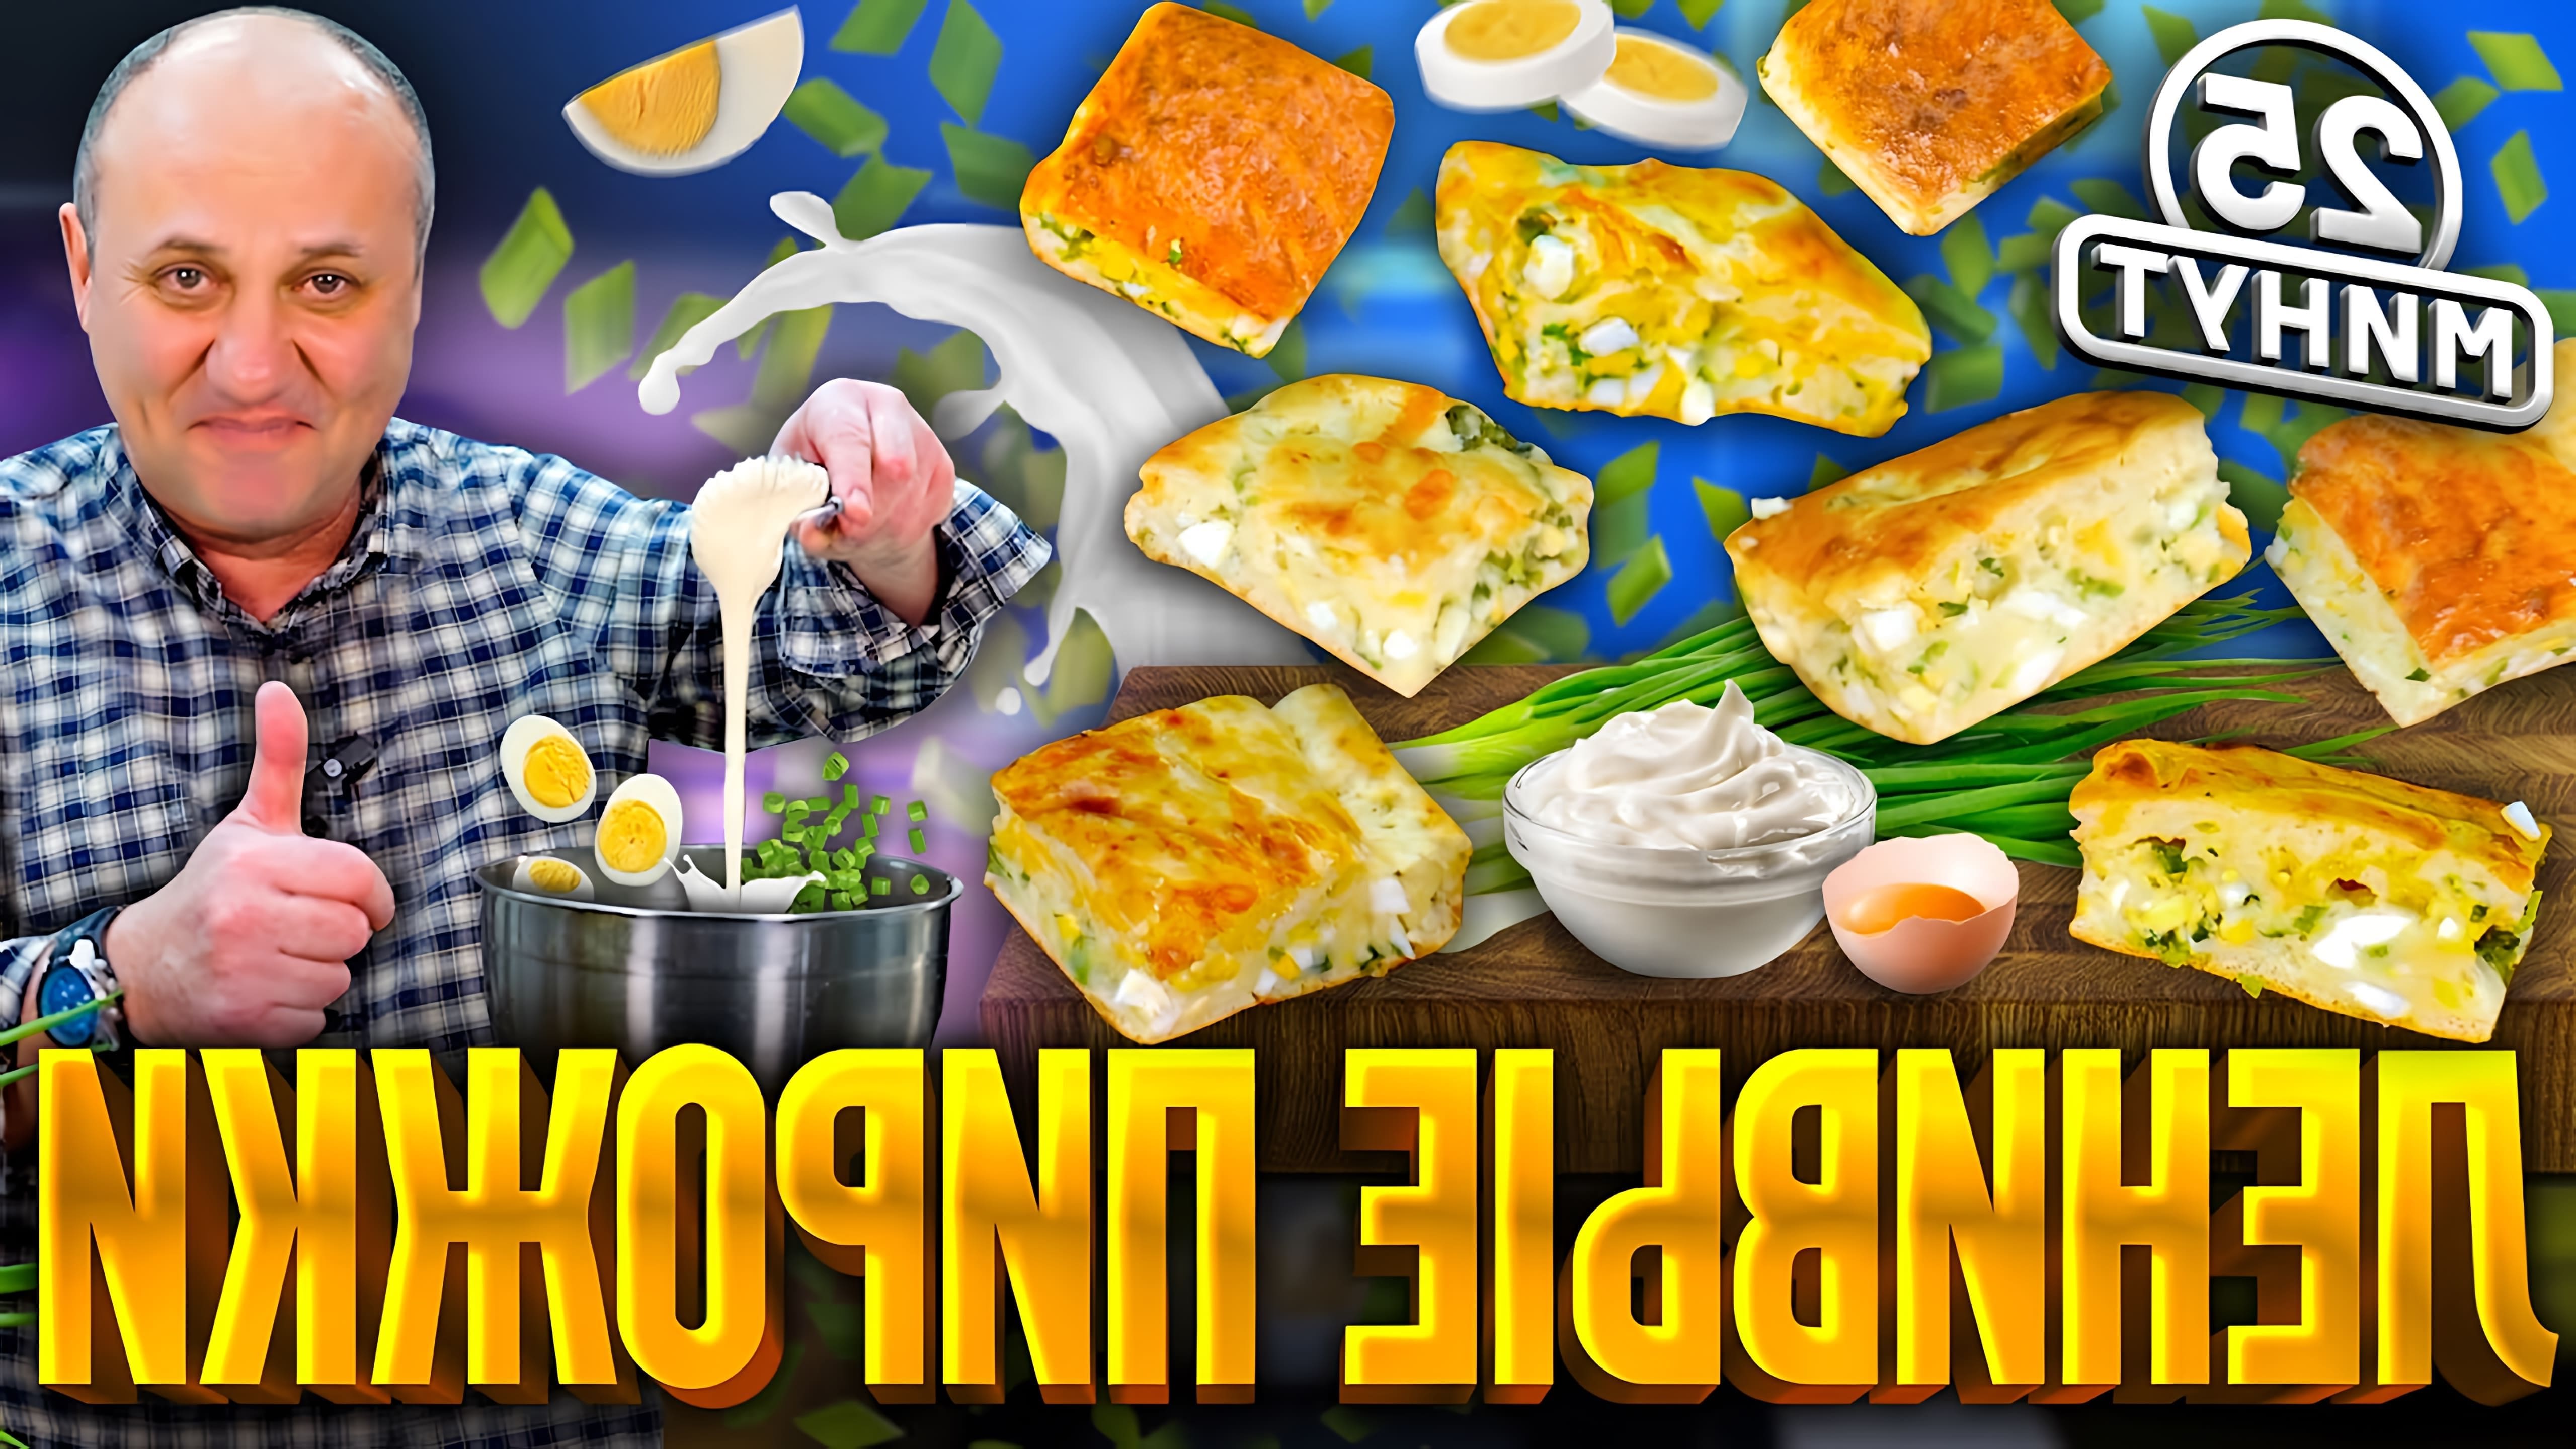 В данном видео шеф-повар Илья Лазерсон демонстрирует рецепт заливного пирога с луком и яйцом